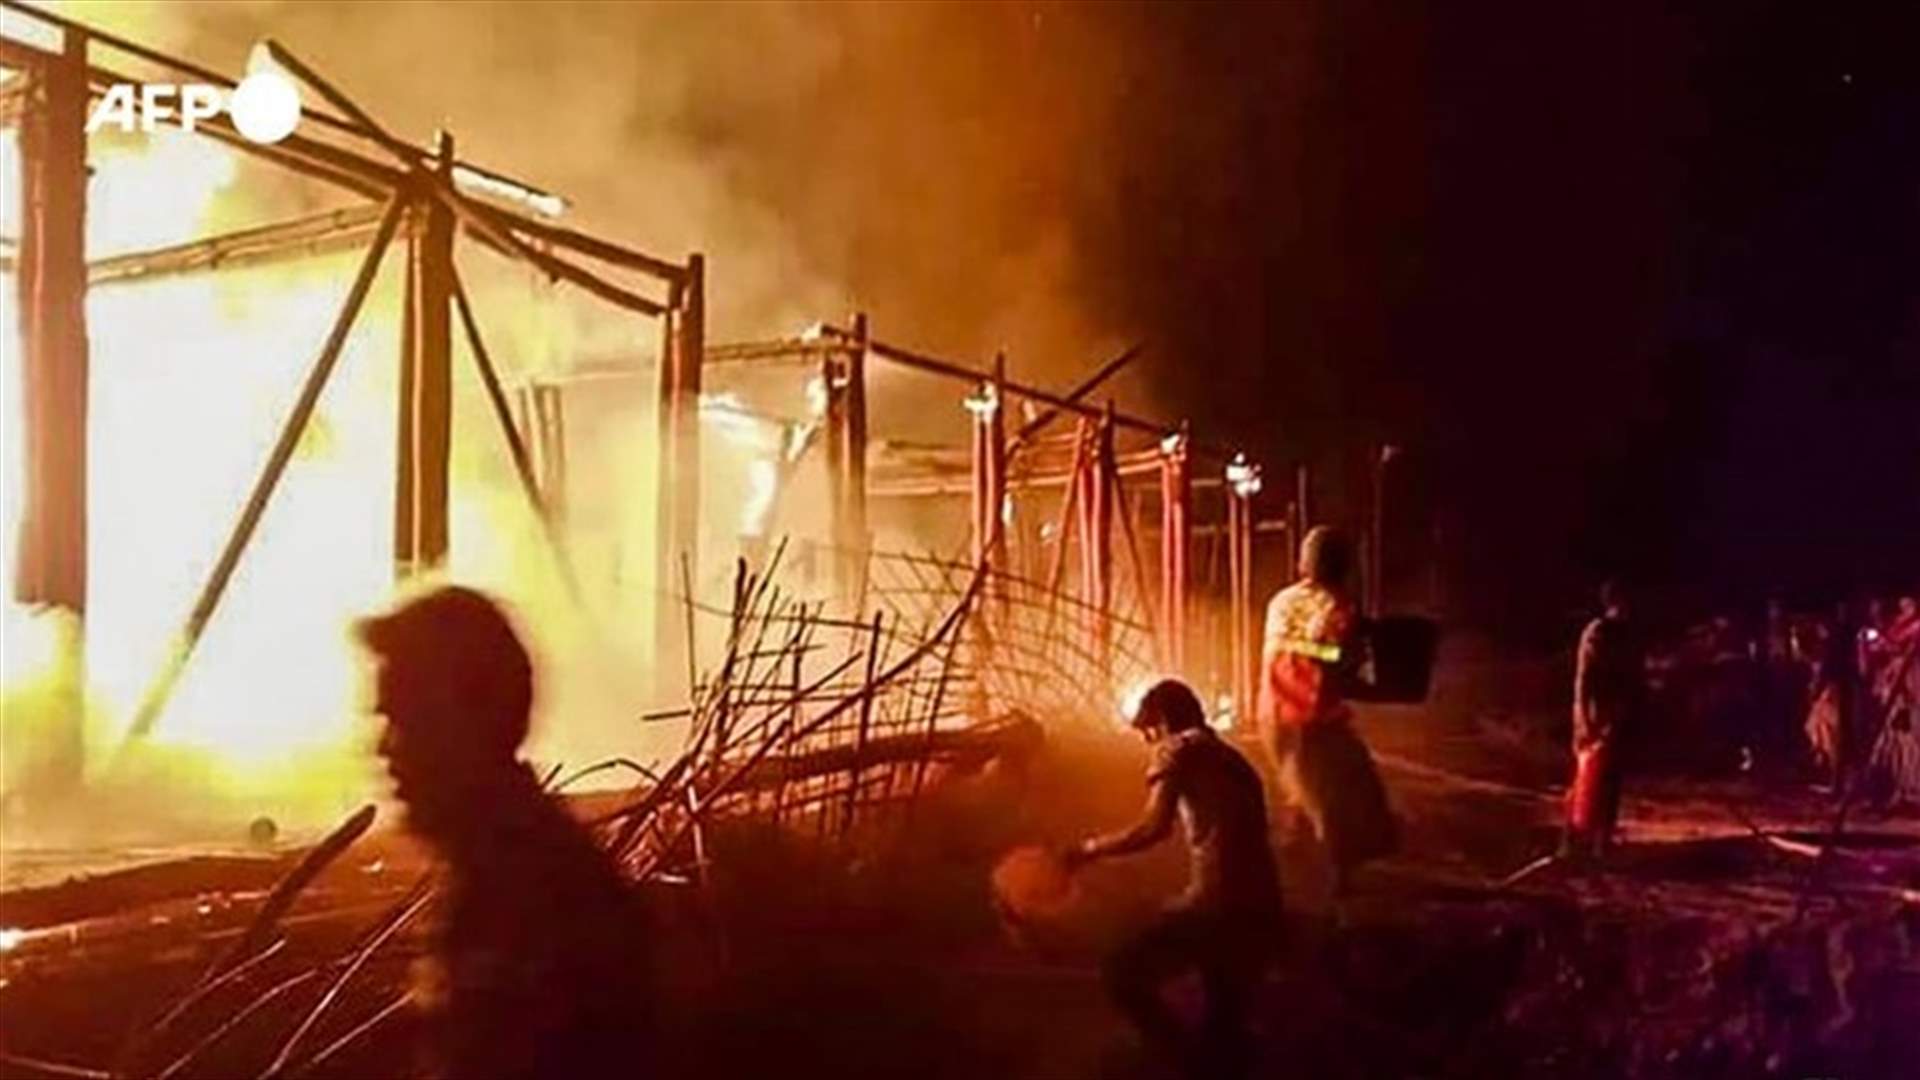 حريق يدمر 4 مدارس لليونيسف في مخيمات للروهينغا ببنغلادش